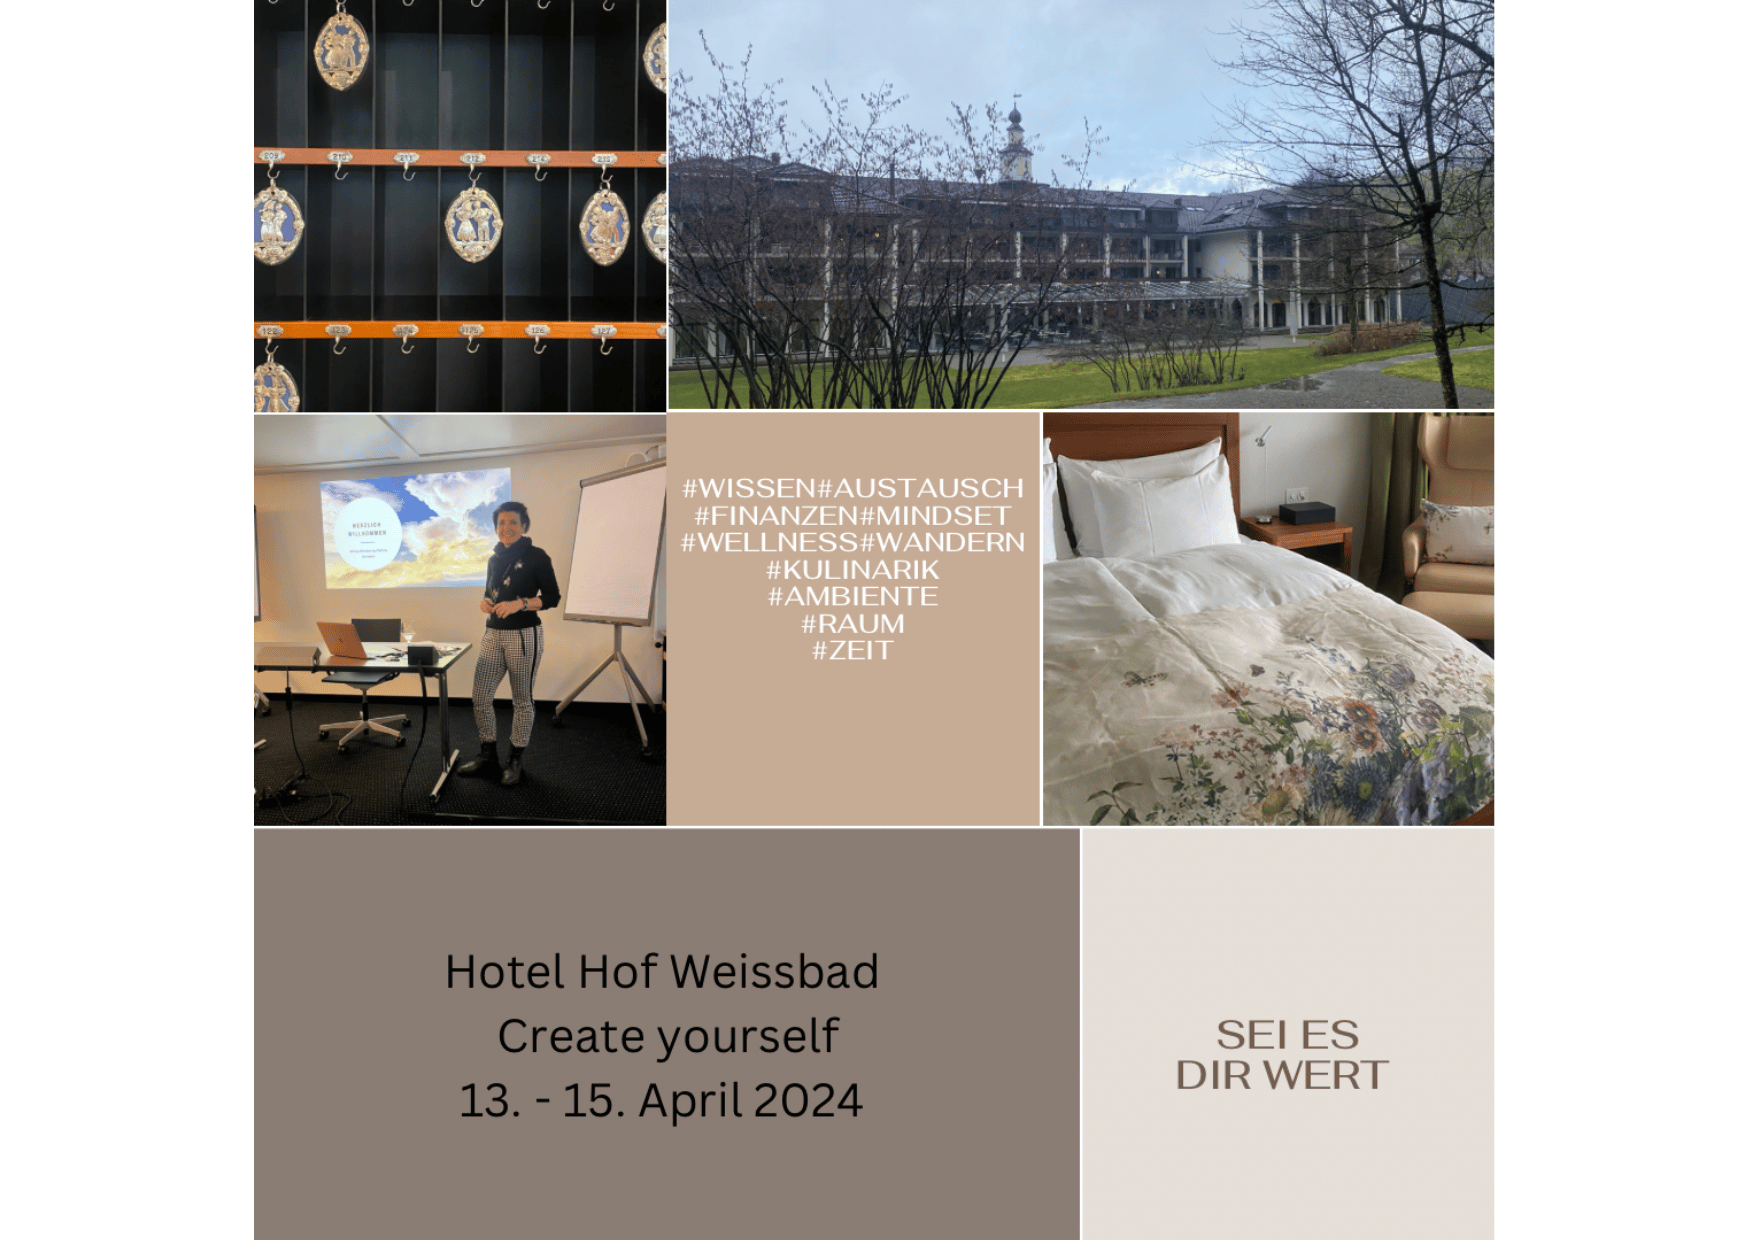 Create yourself Workshop vom 13. - 15. April 2024 im Hotel Hofweissbad für Ladies und Herren